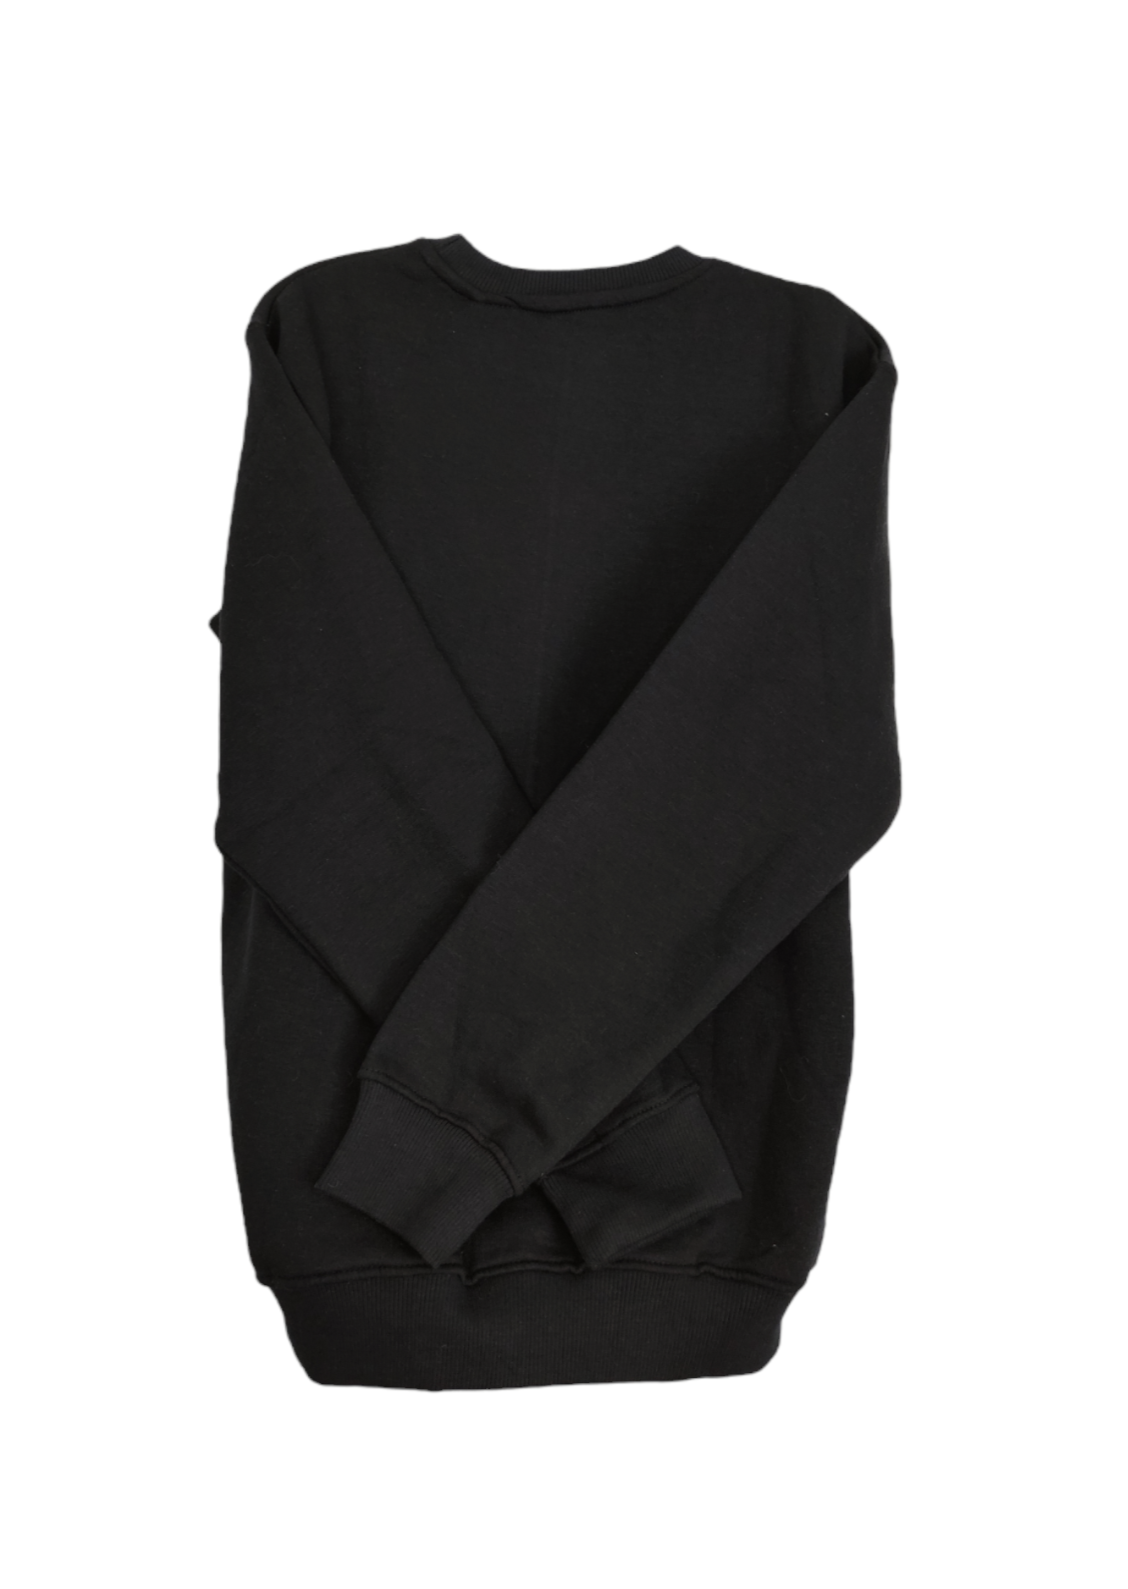 Γυναικεία Φούτερ Μπλούζα BERSHKA σε Μαύρο χρώμα (S/M)